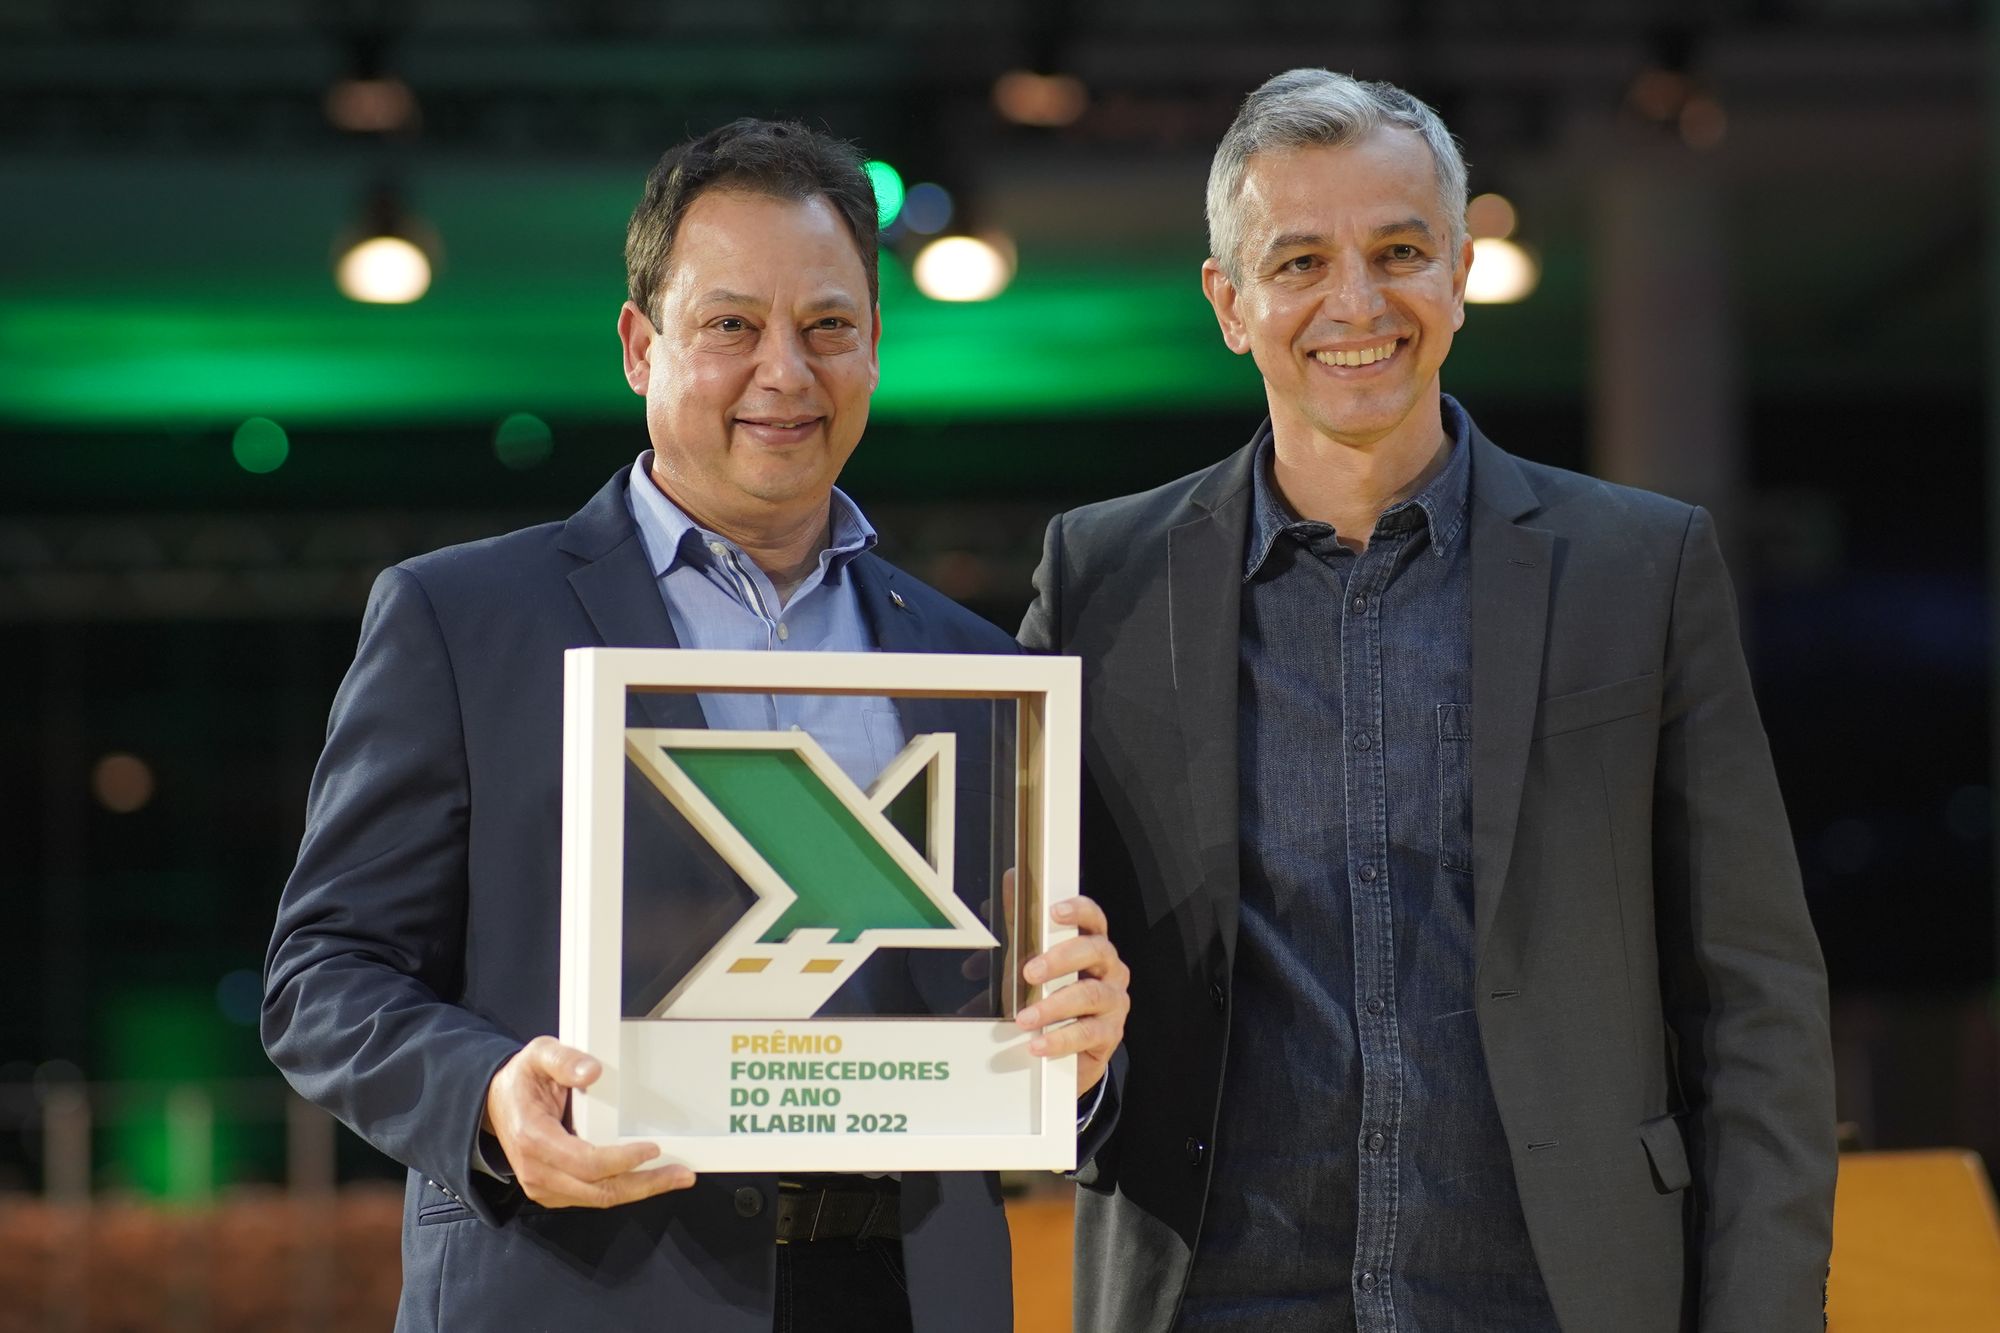 Valmet conquista Prêmio Fornecedores do Ano 2022 da Klabin